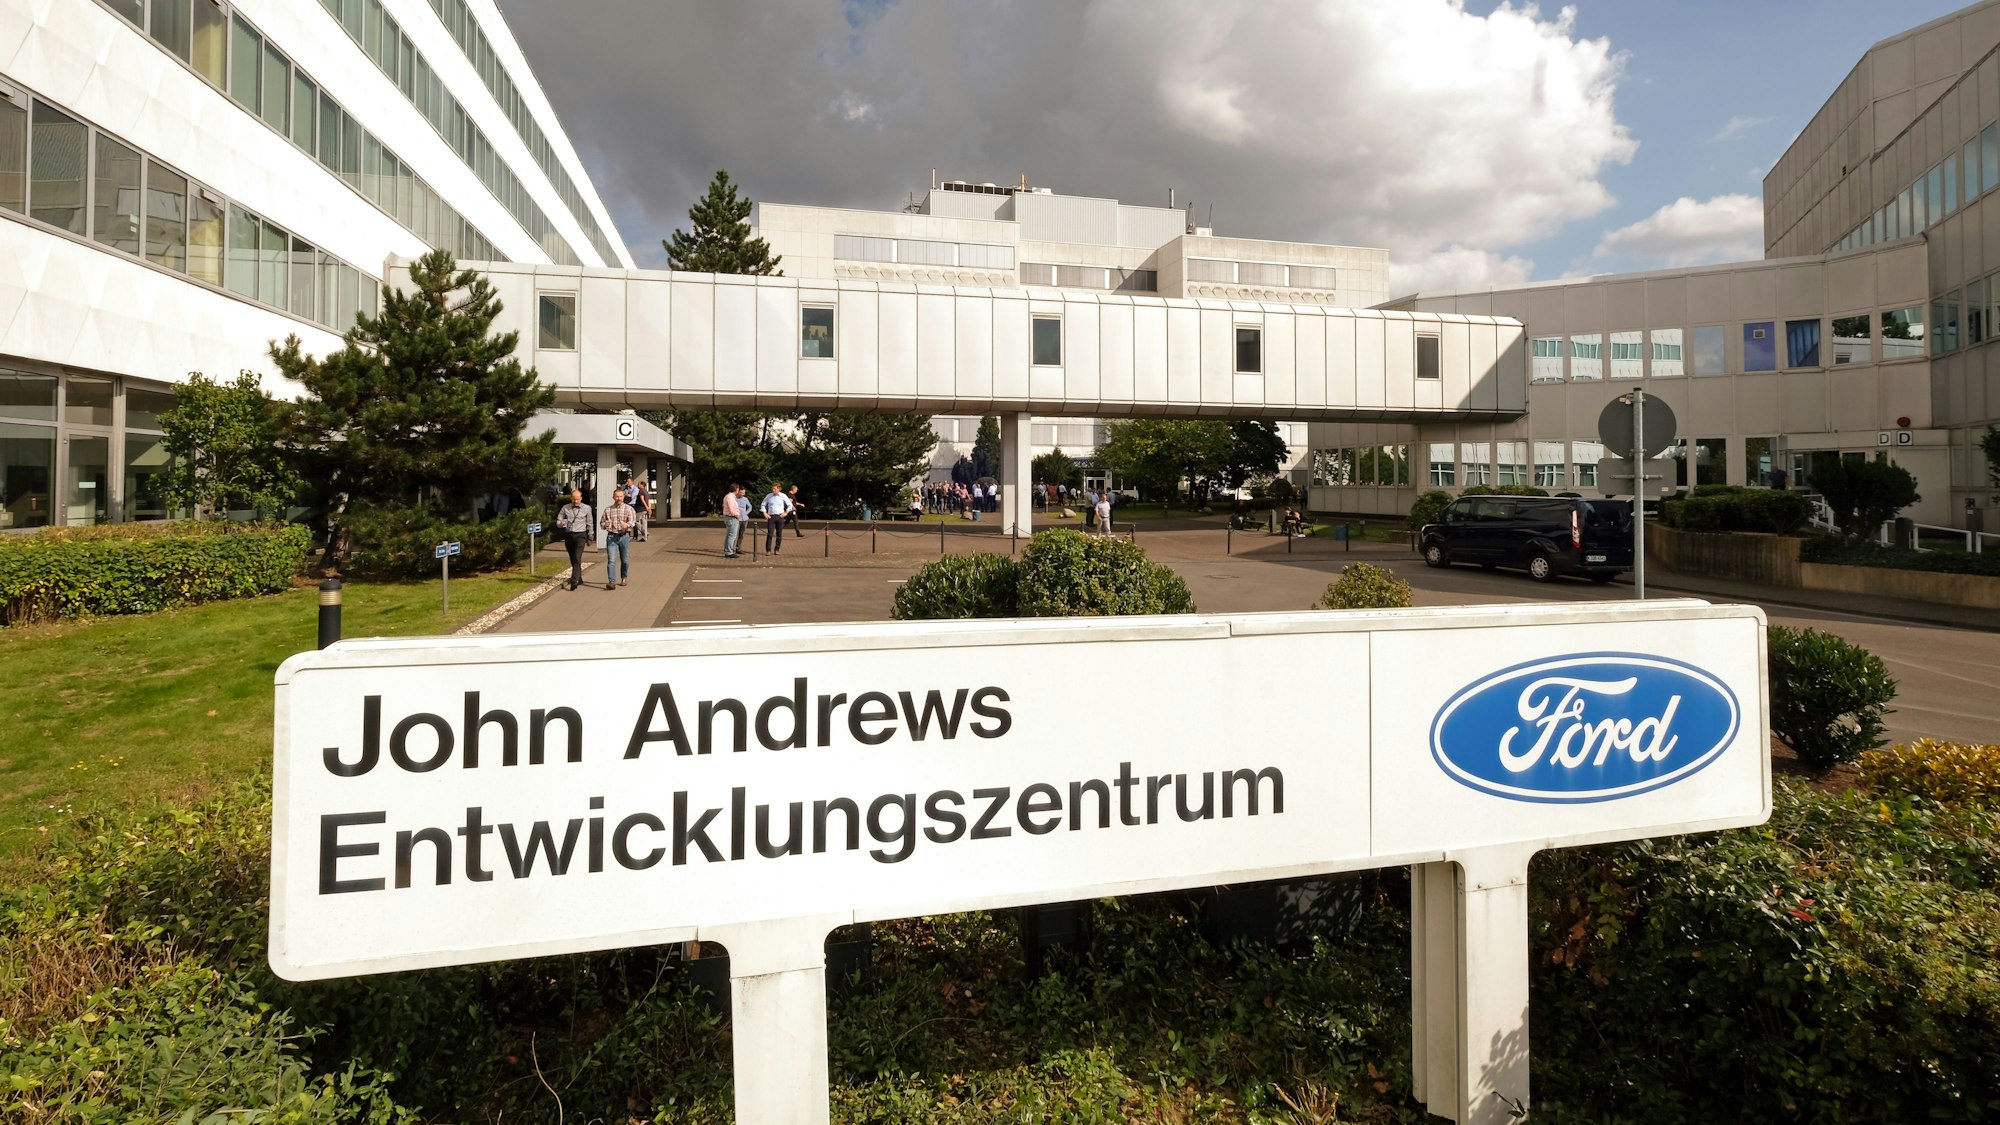 Abgebildet ist ein großes, U-förmiges Gebäude. Im Vordergrund steht ein Schild mit der Aufschrift „John Andrews Entwicklungszentrum“ mit dem blauen, ovalen Ford-Logo.